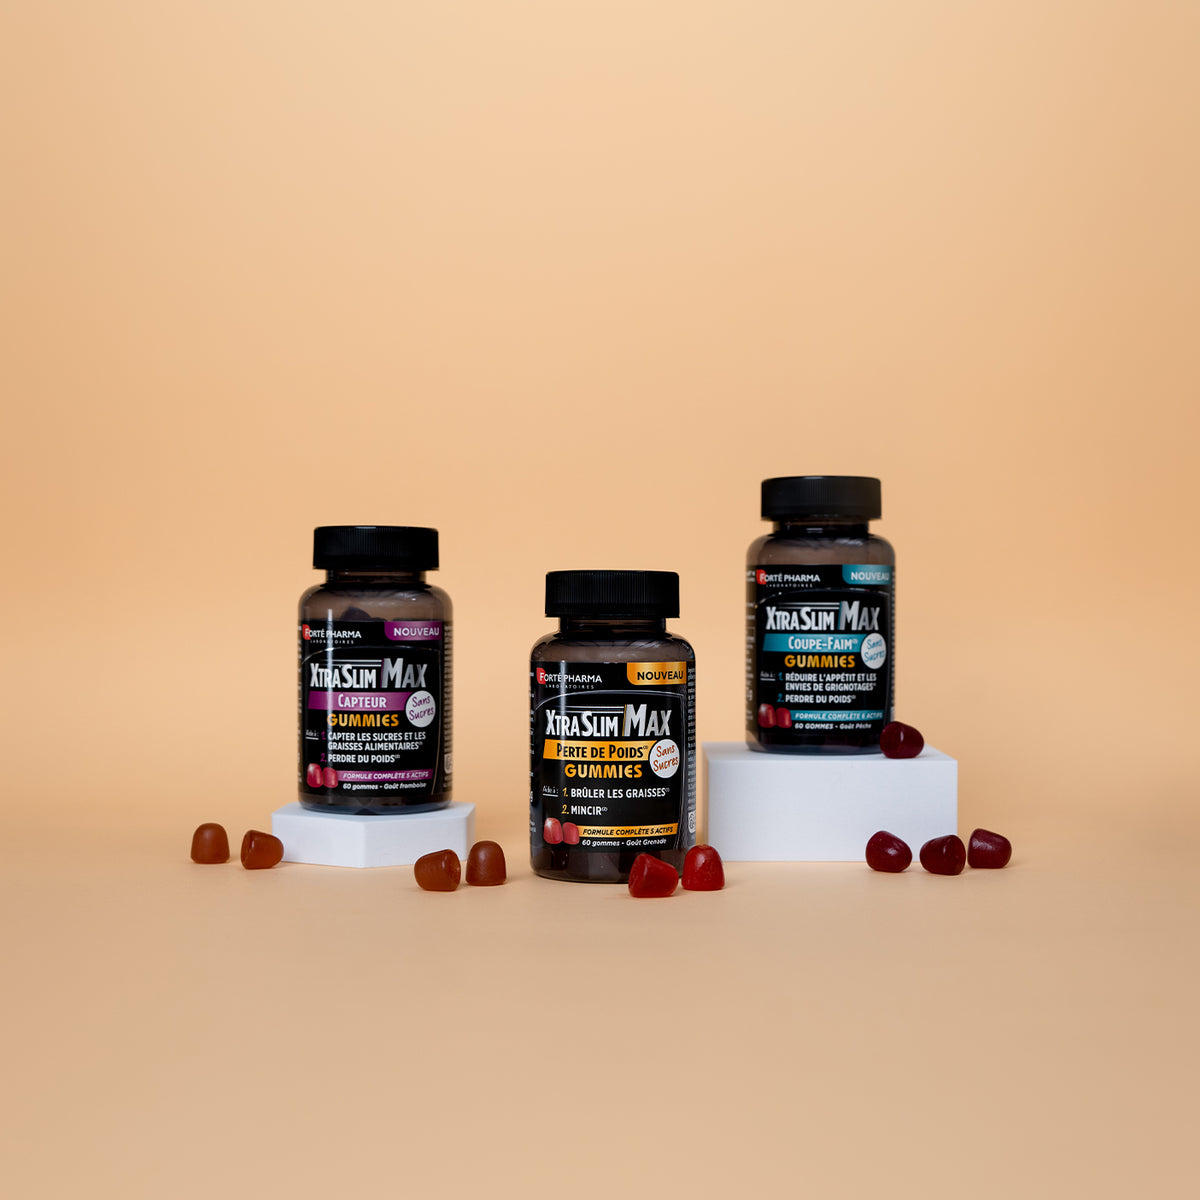 Forte Pharma XtraSlim Max Perdida de Peso 60 Gummies – Farmacia Granvia 216